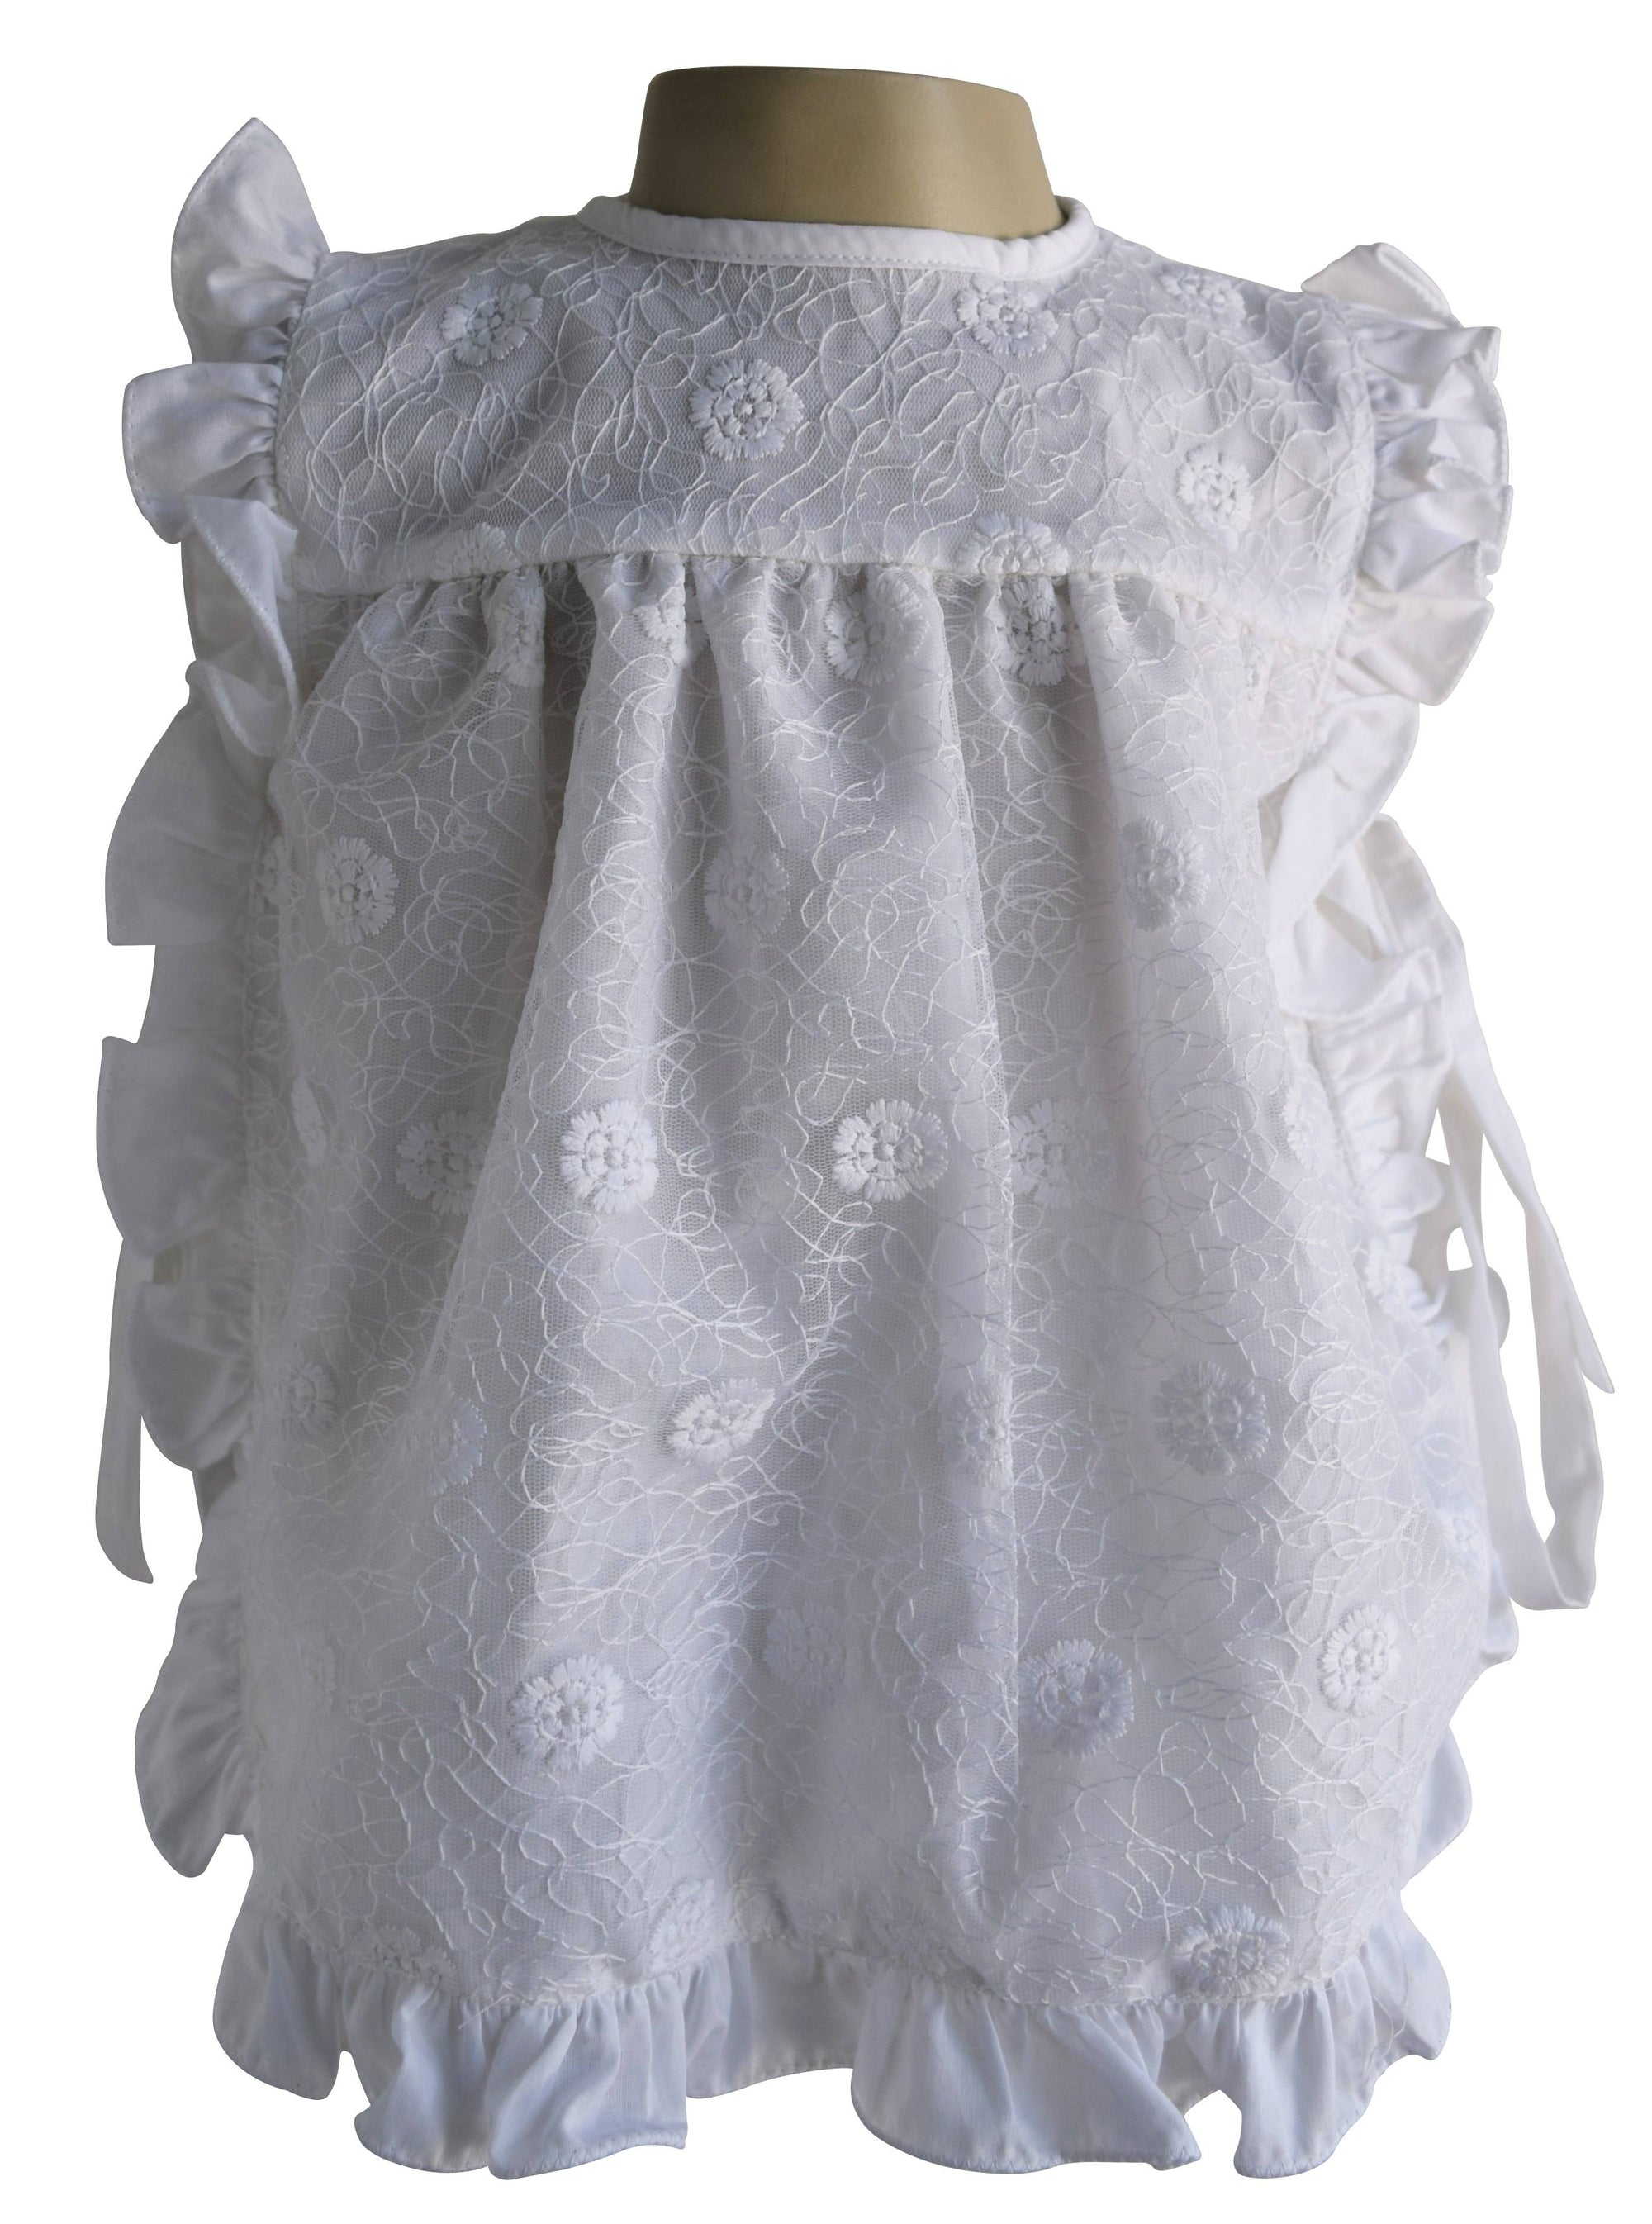 New born dress_Faye White Lace Baby Dress